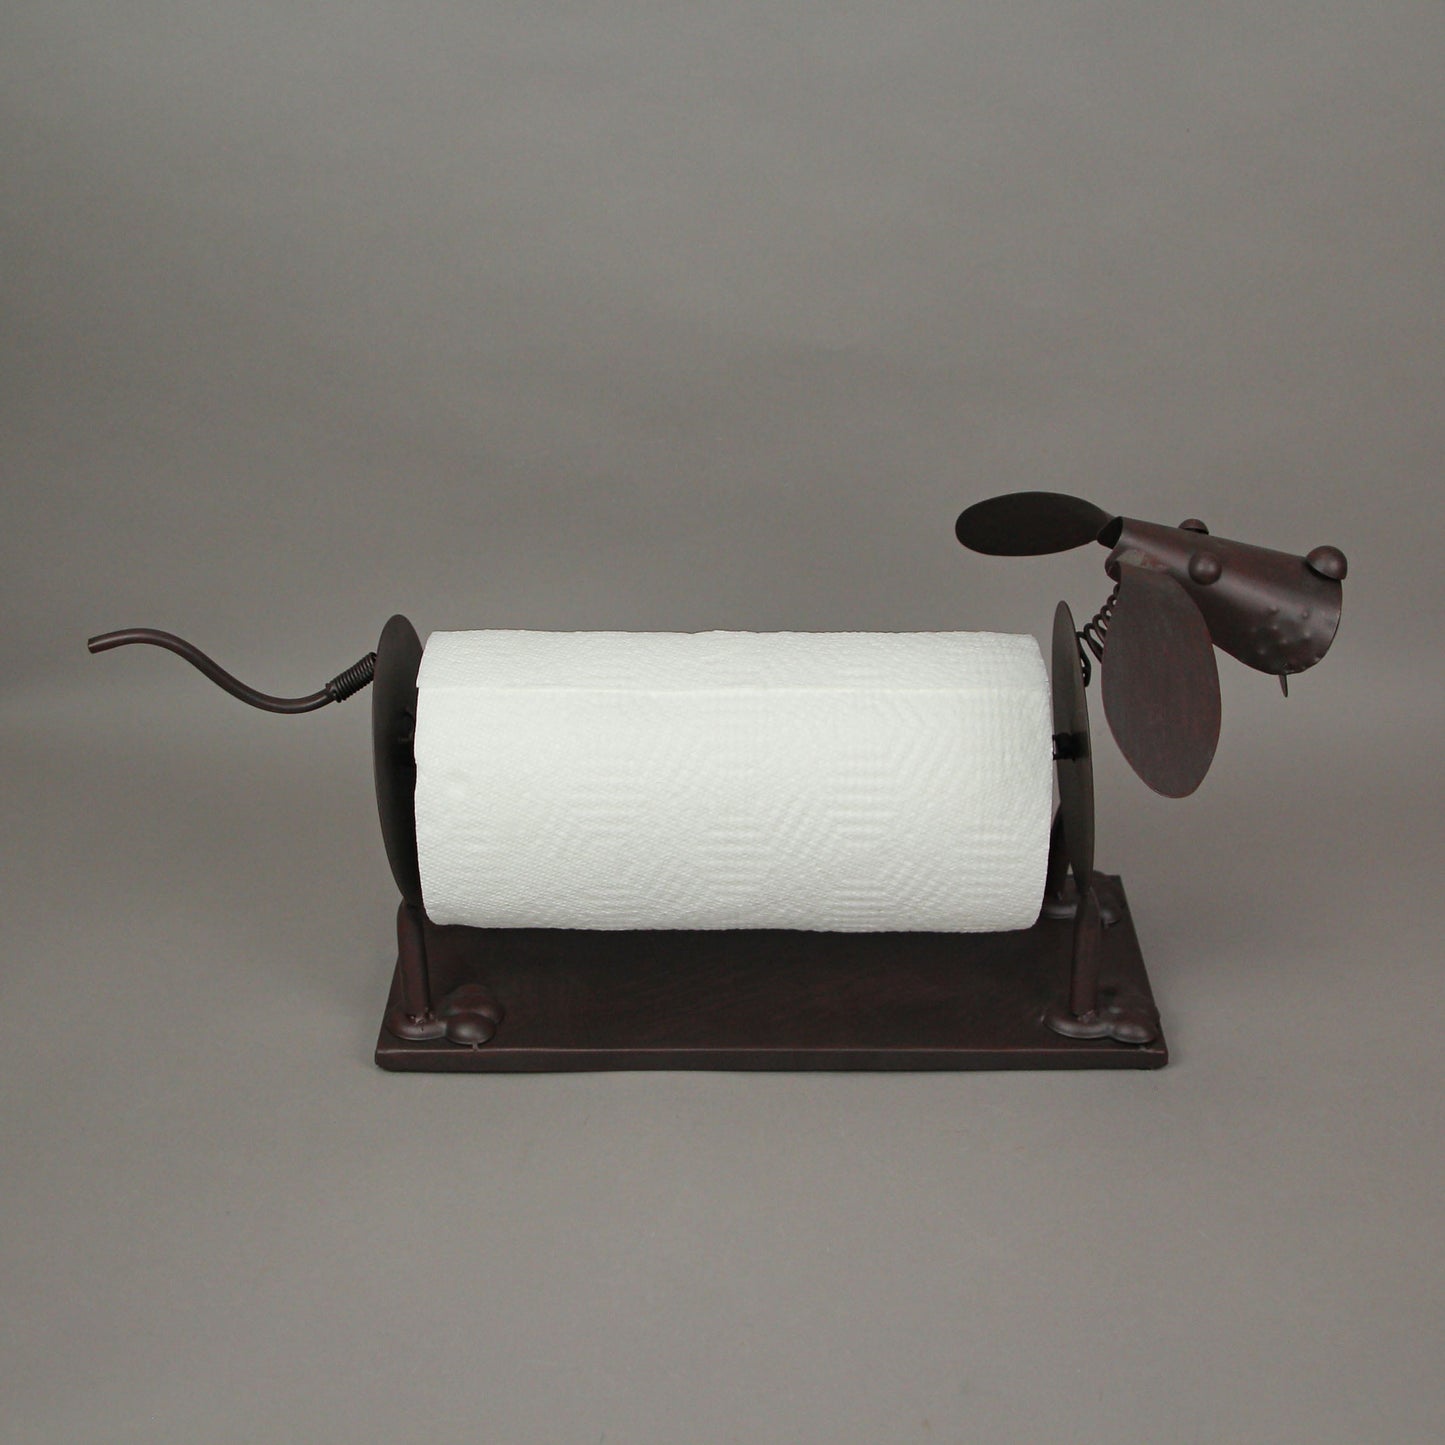 De Leon Brown Metal Dog Countertop Paper Towel Holder Kitchen Storage